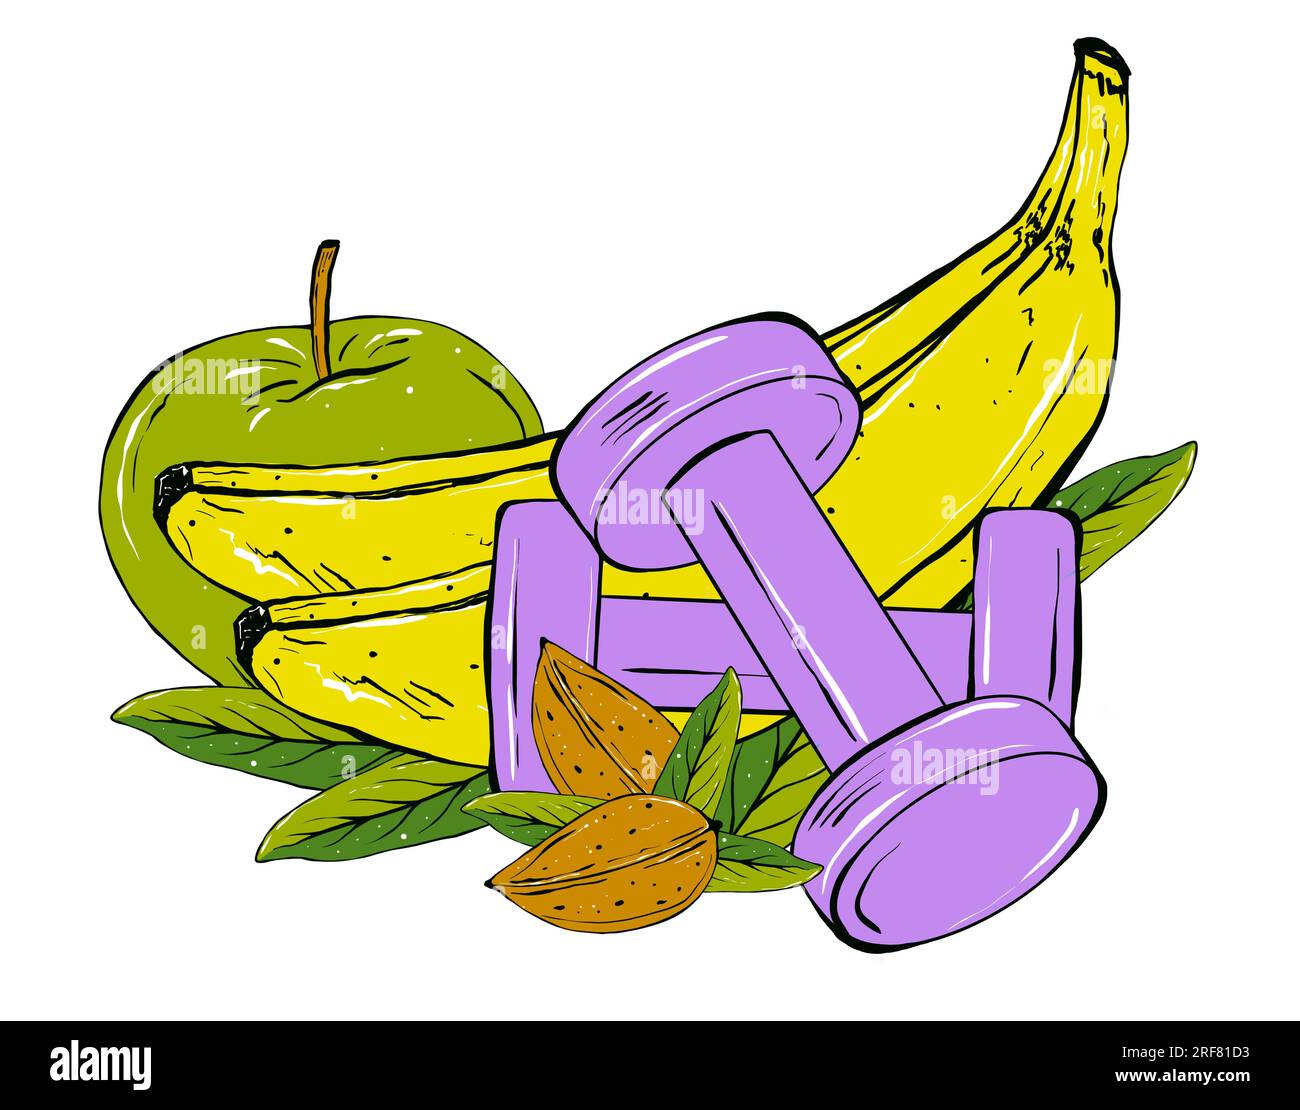 Sportnahrung, Fruchtzusammensetzungen und Nahrungsergänzungsmittel. Handgezeichnete Illustration. Stockfoto